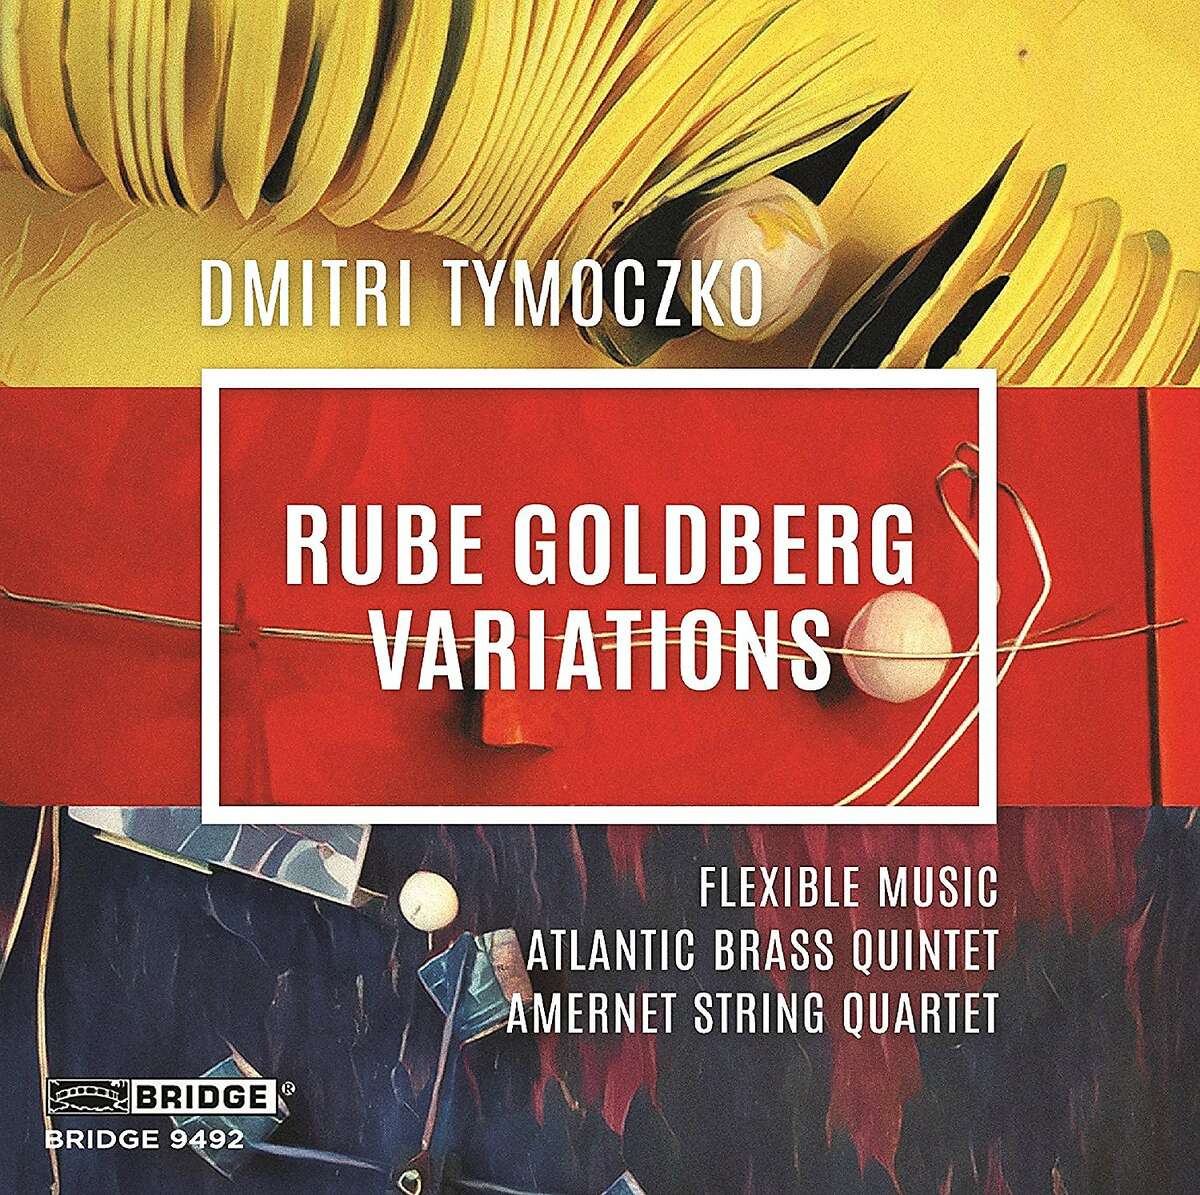 Dmitri�Tymoczko, "Rube Goldberg Variations"